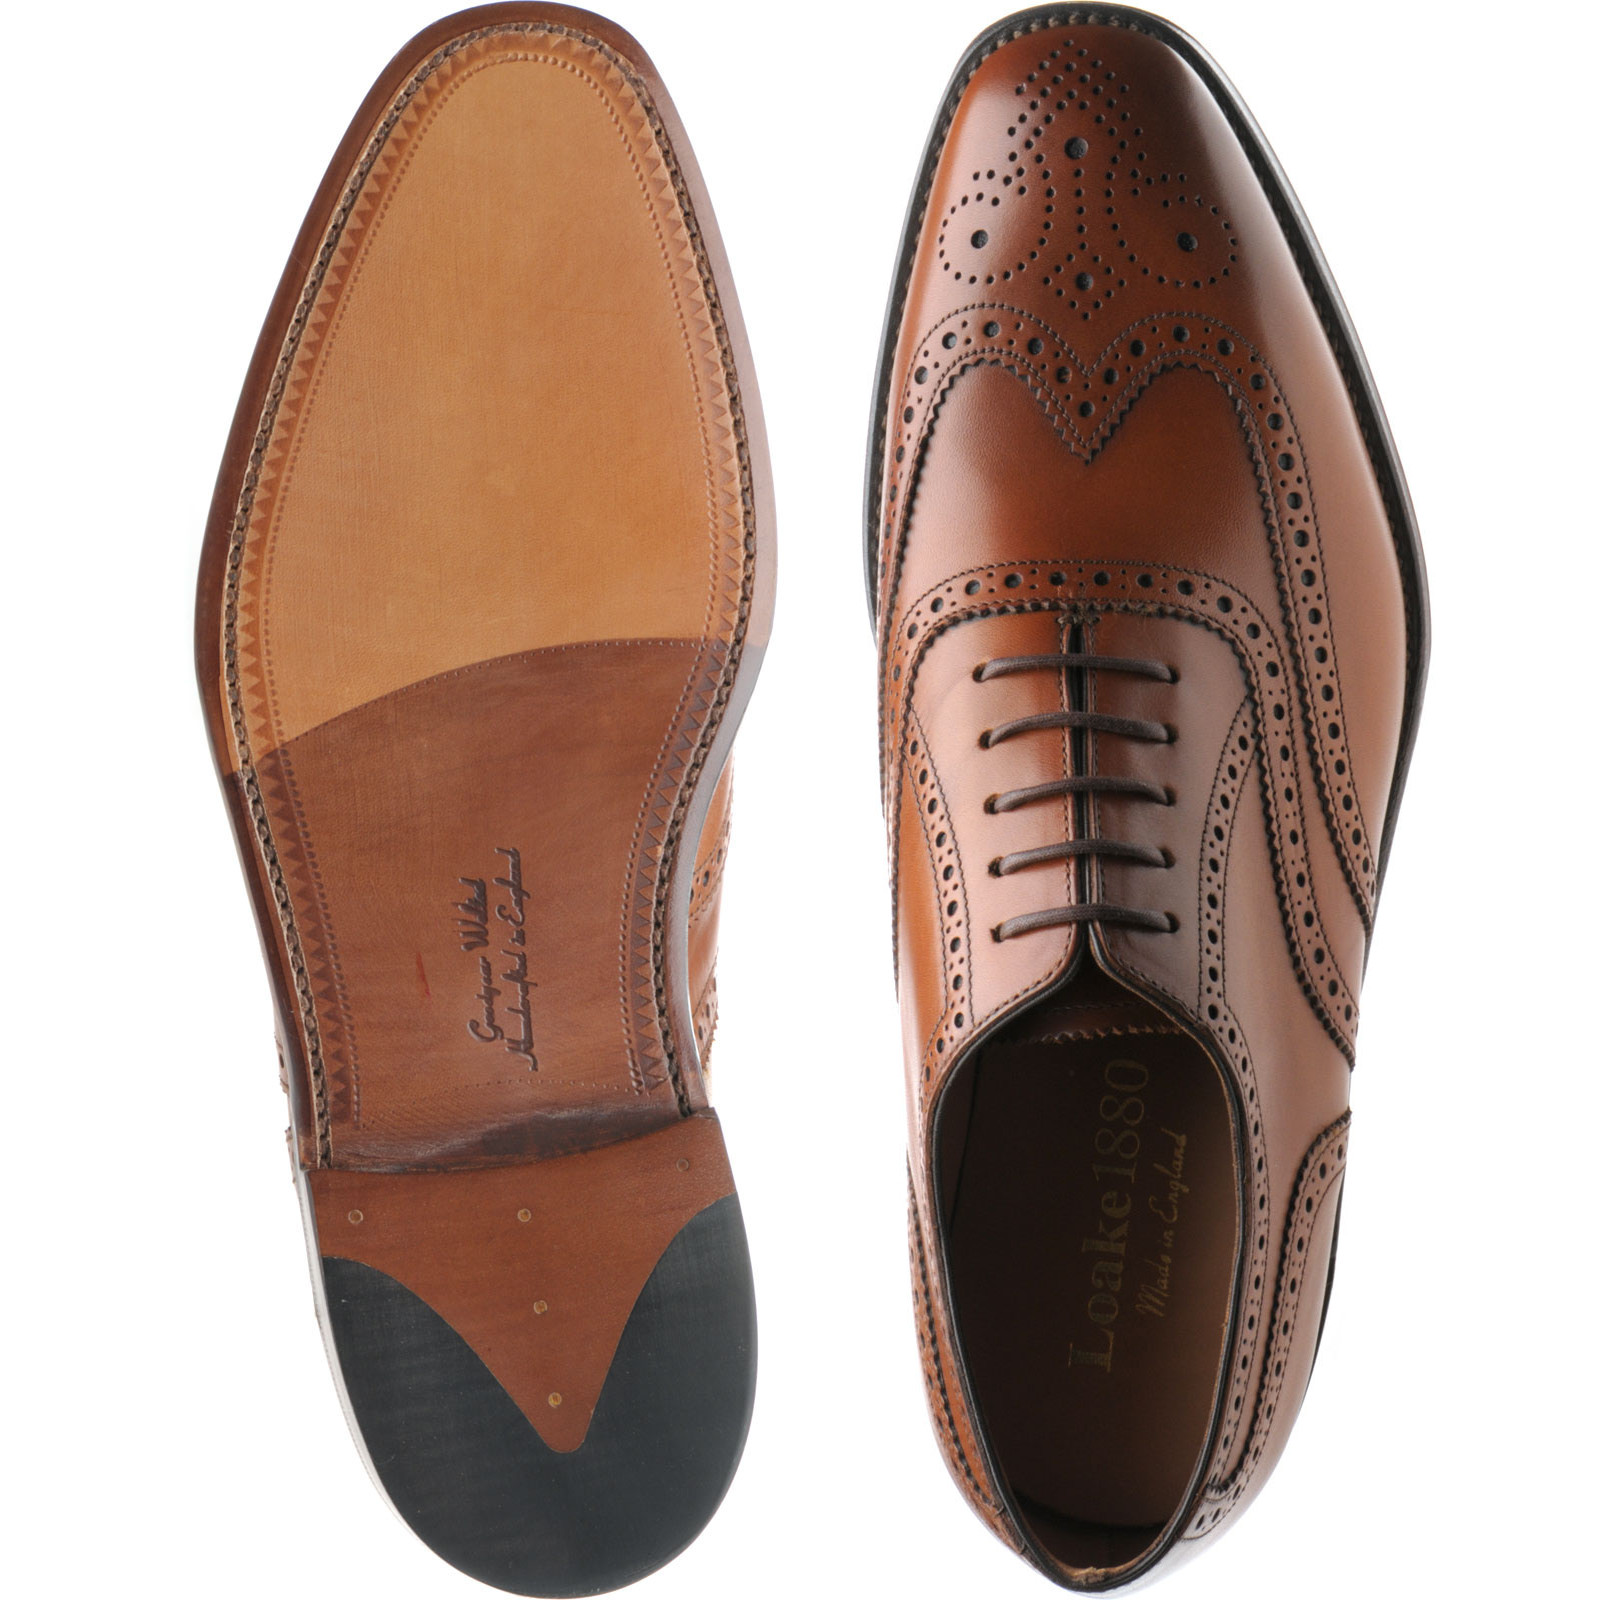 Loake shoes | Loake 1880 | Buckingham brogues in Brown Calf at Herring ...